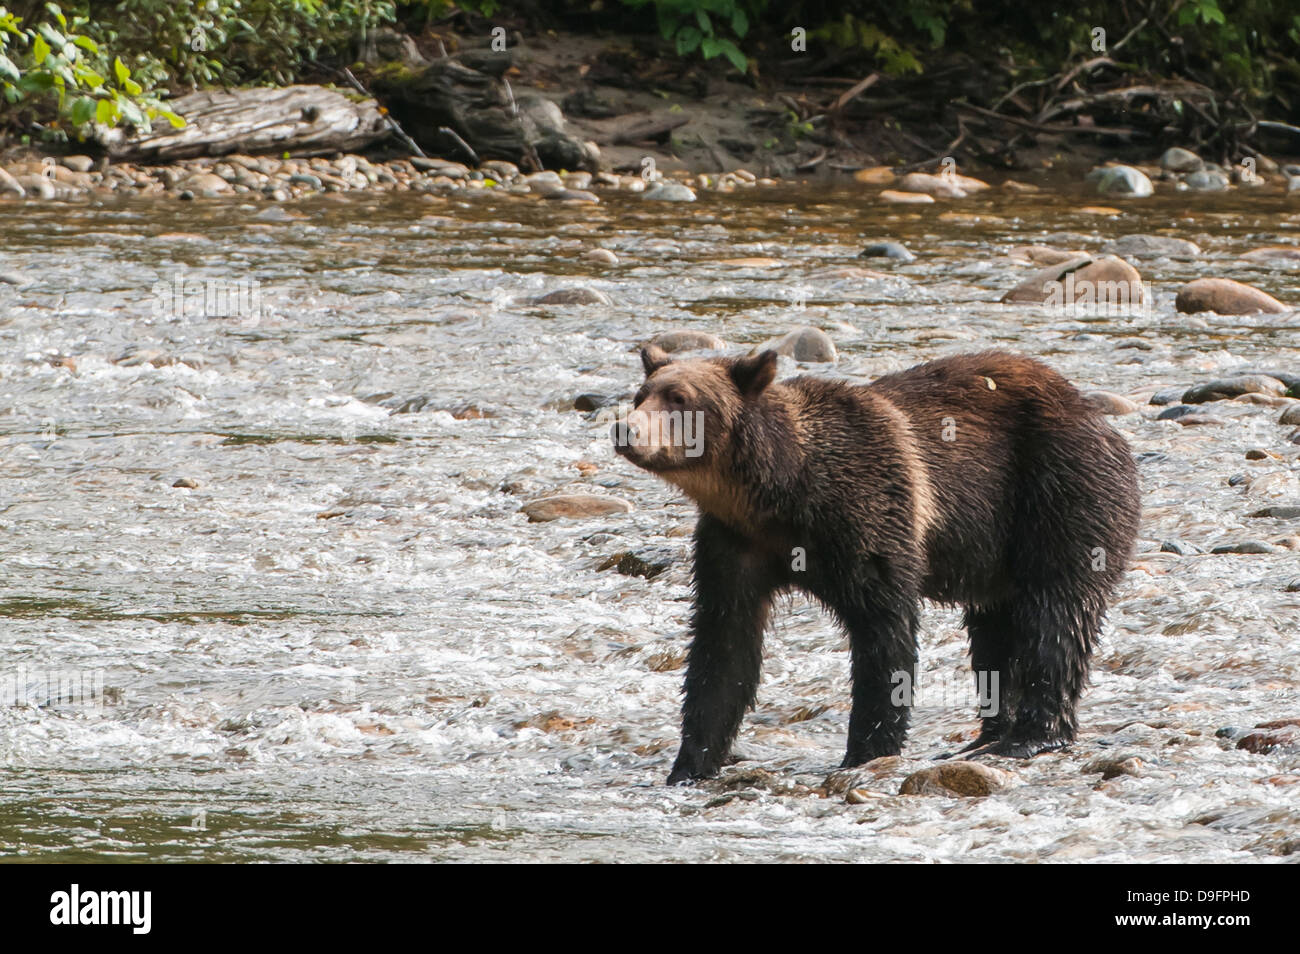 Marrone o orso grizzly (Ursus arctos) per la pesca del salmone nel grande orso nella foresta pluviale, British Columbia, Canada Foto Stock